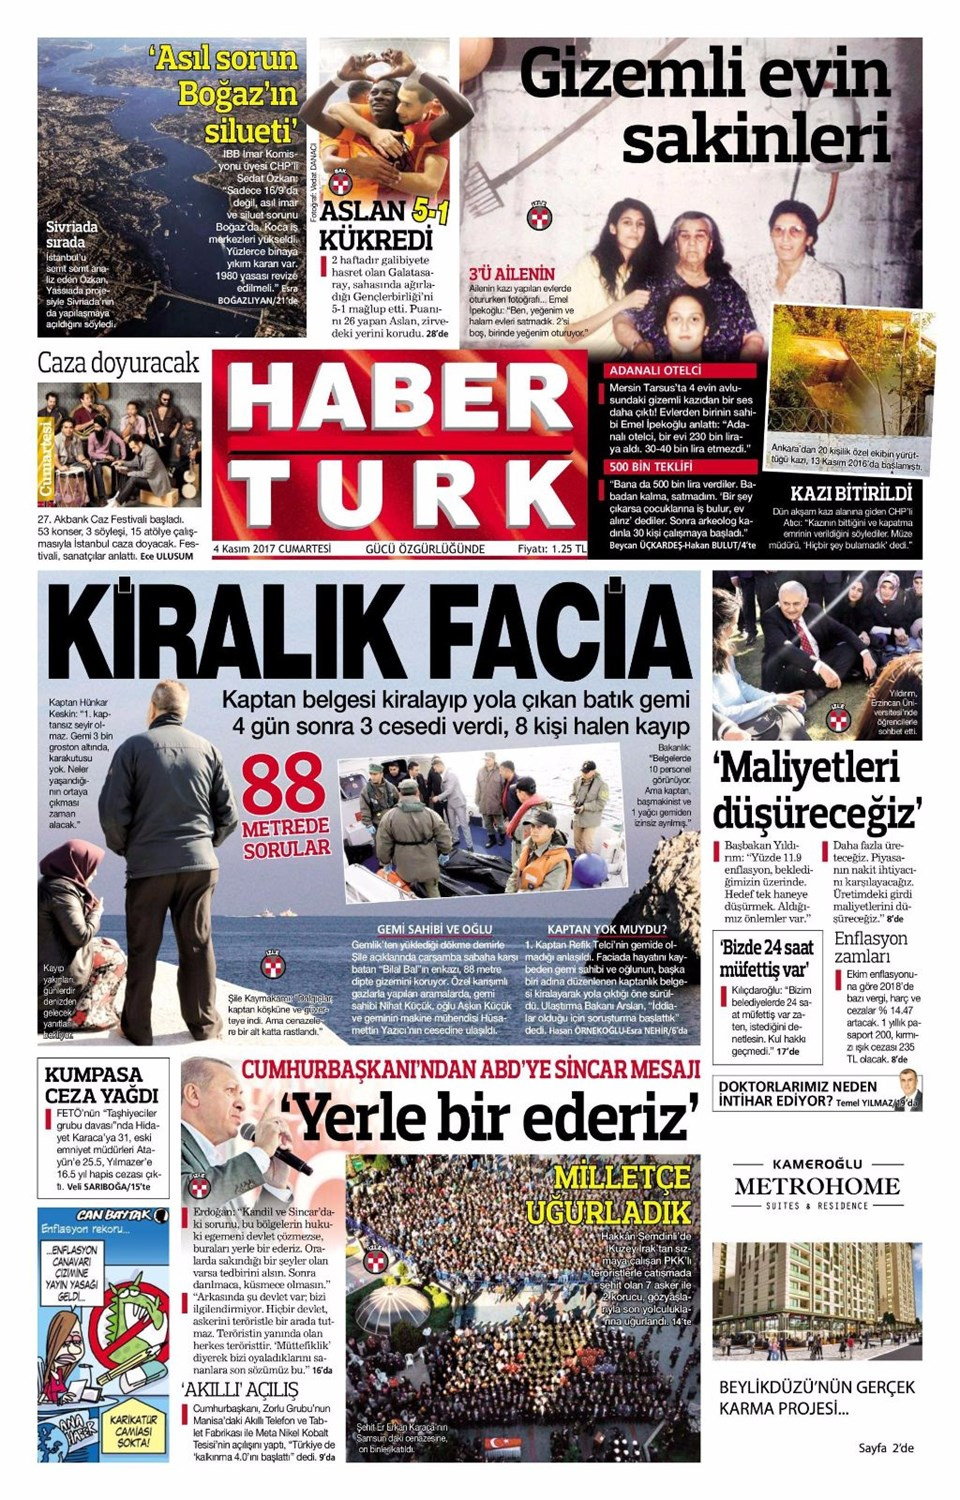 Gazete manşetleri Sözcü - Fanatik - Hürriyet 4 Kasım 2017